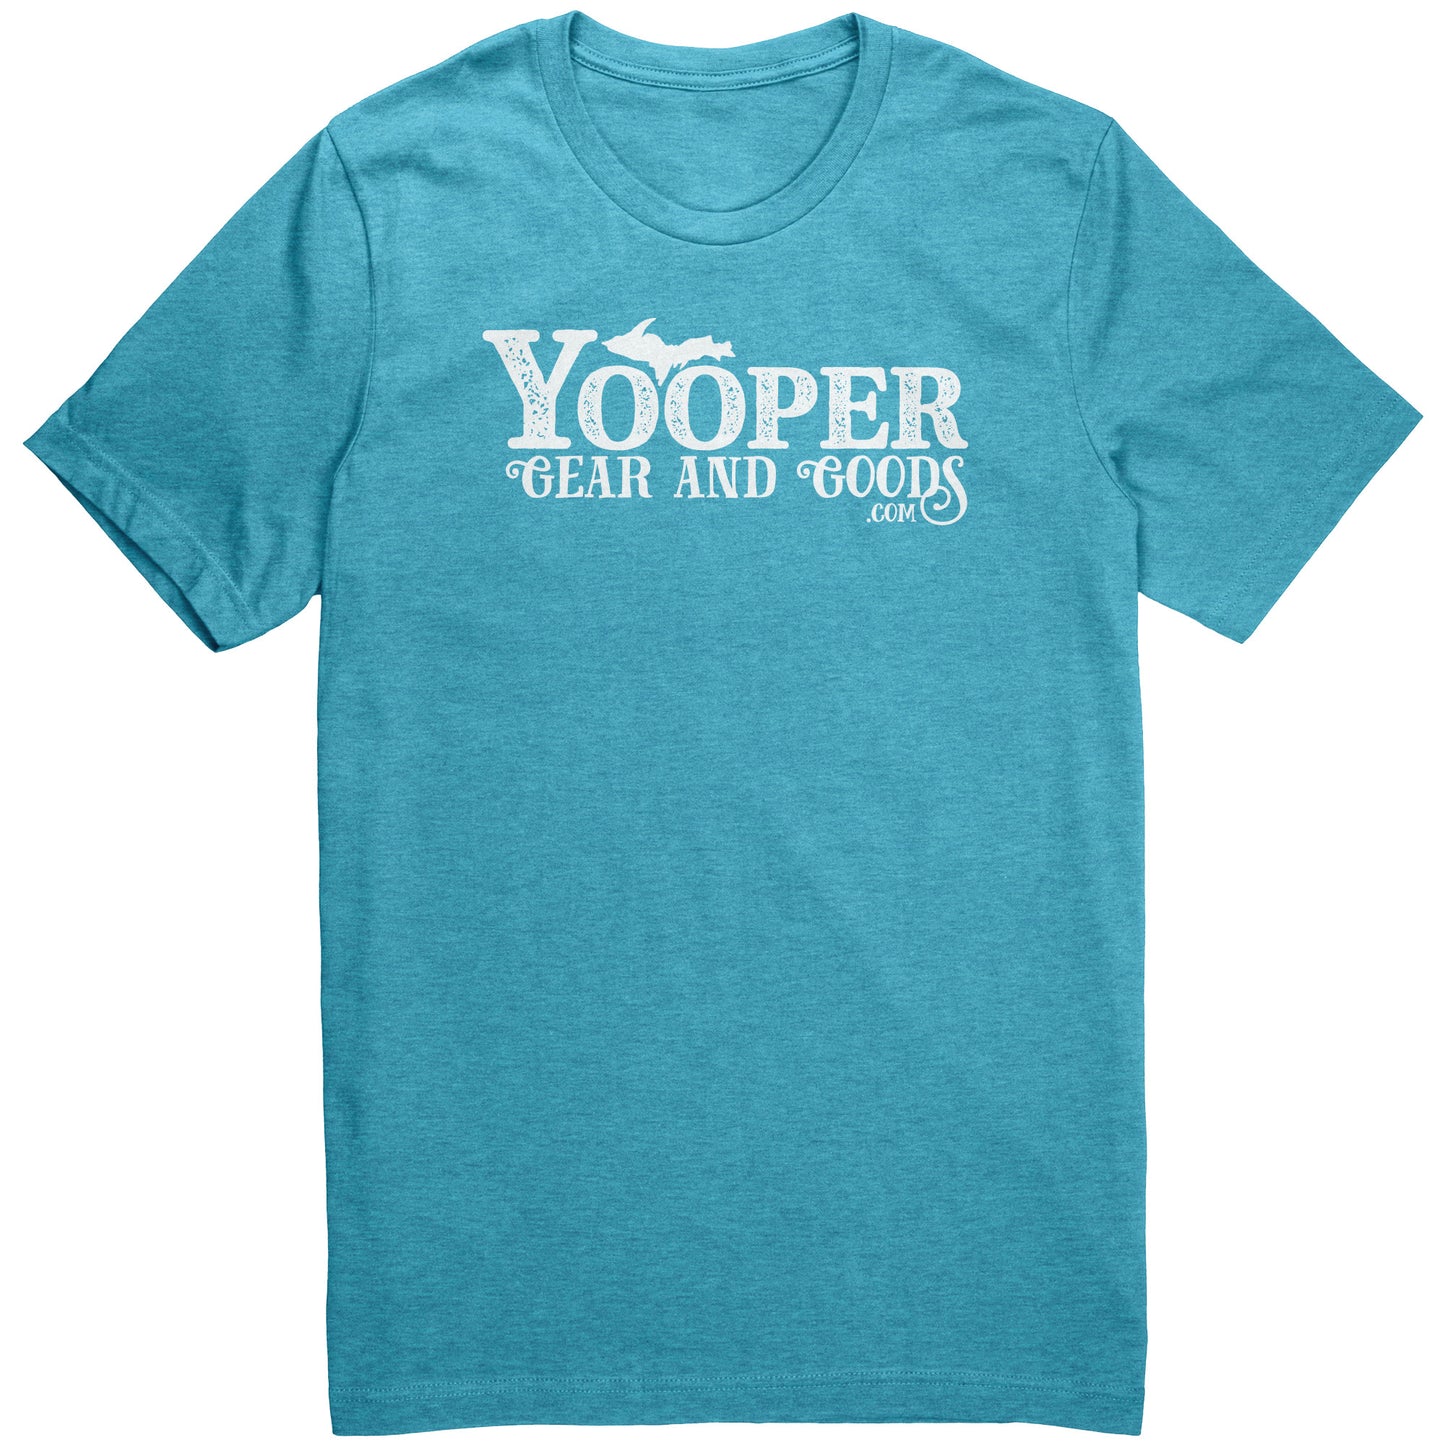 Yooper Gear and Goods Shirt